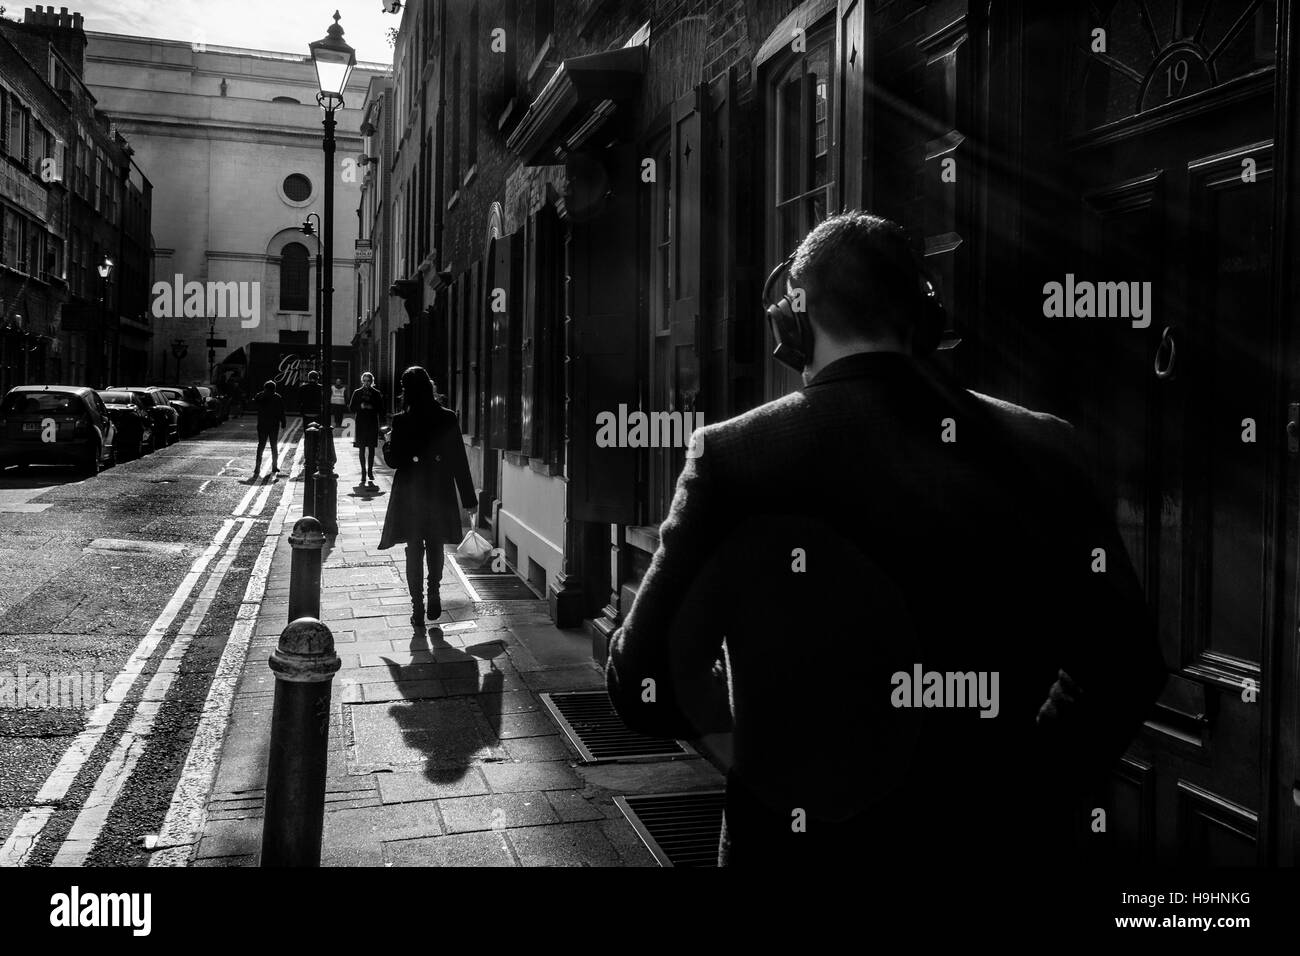 Londres noir et blanc photographie de rue : Man wearing headphones walking in Street, Shoreditch, London Banque D'Images